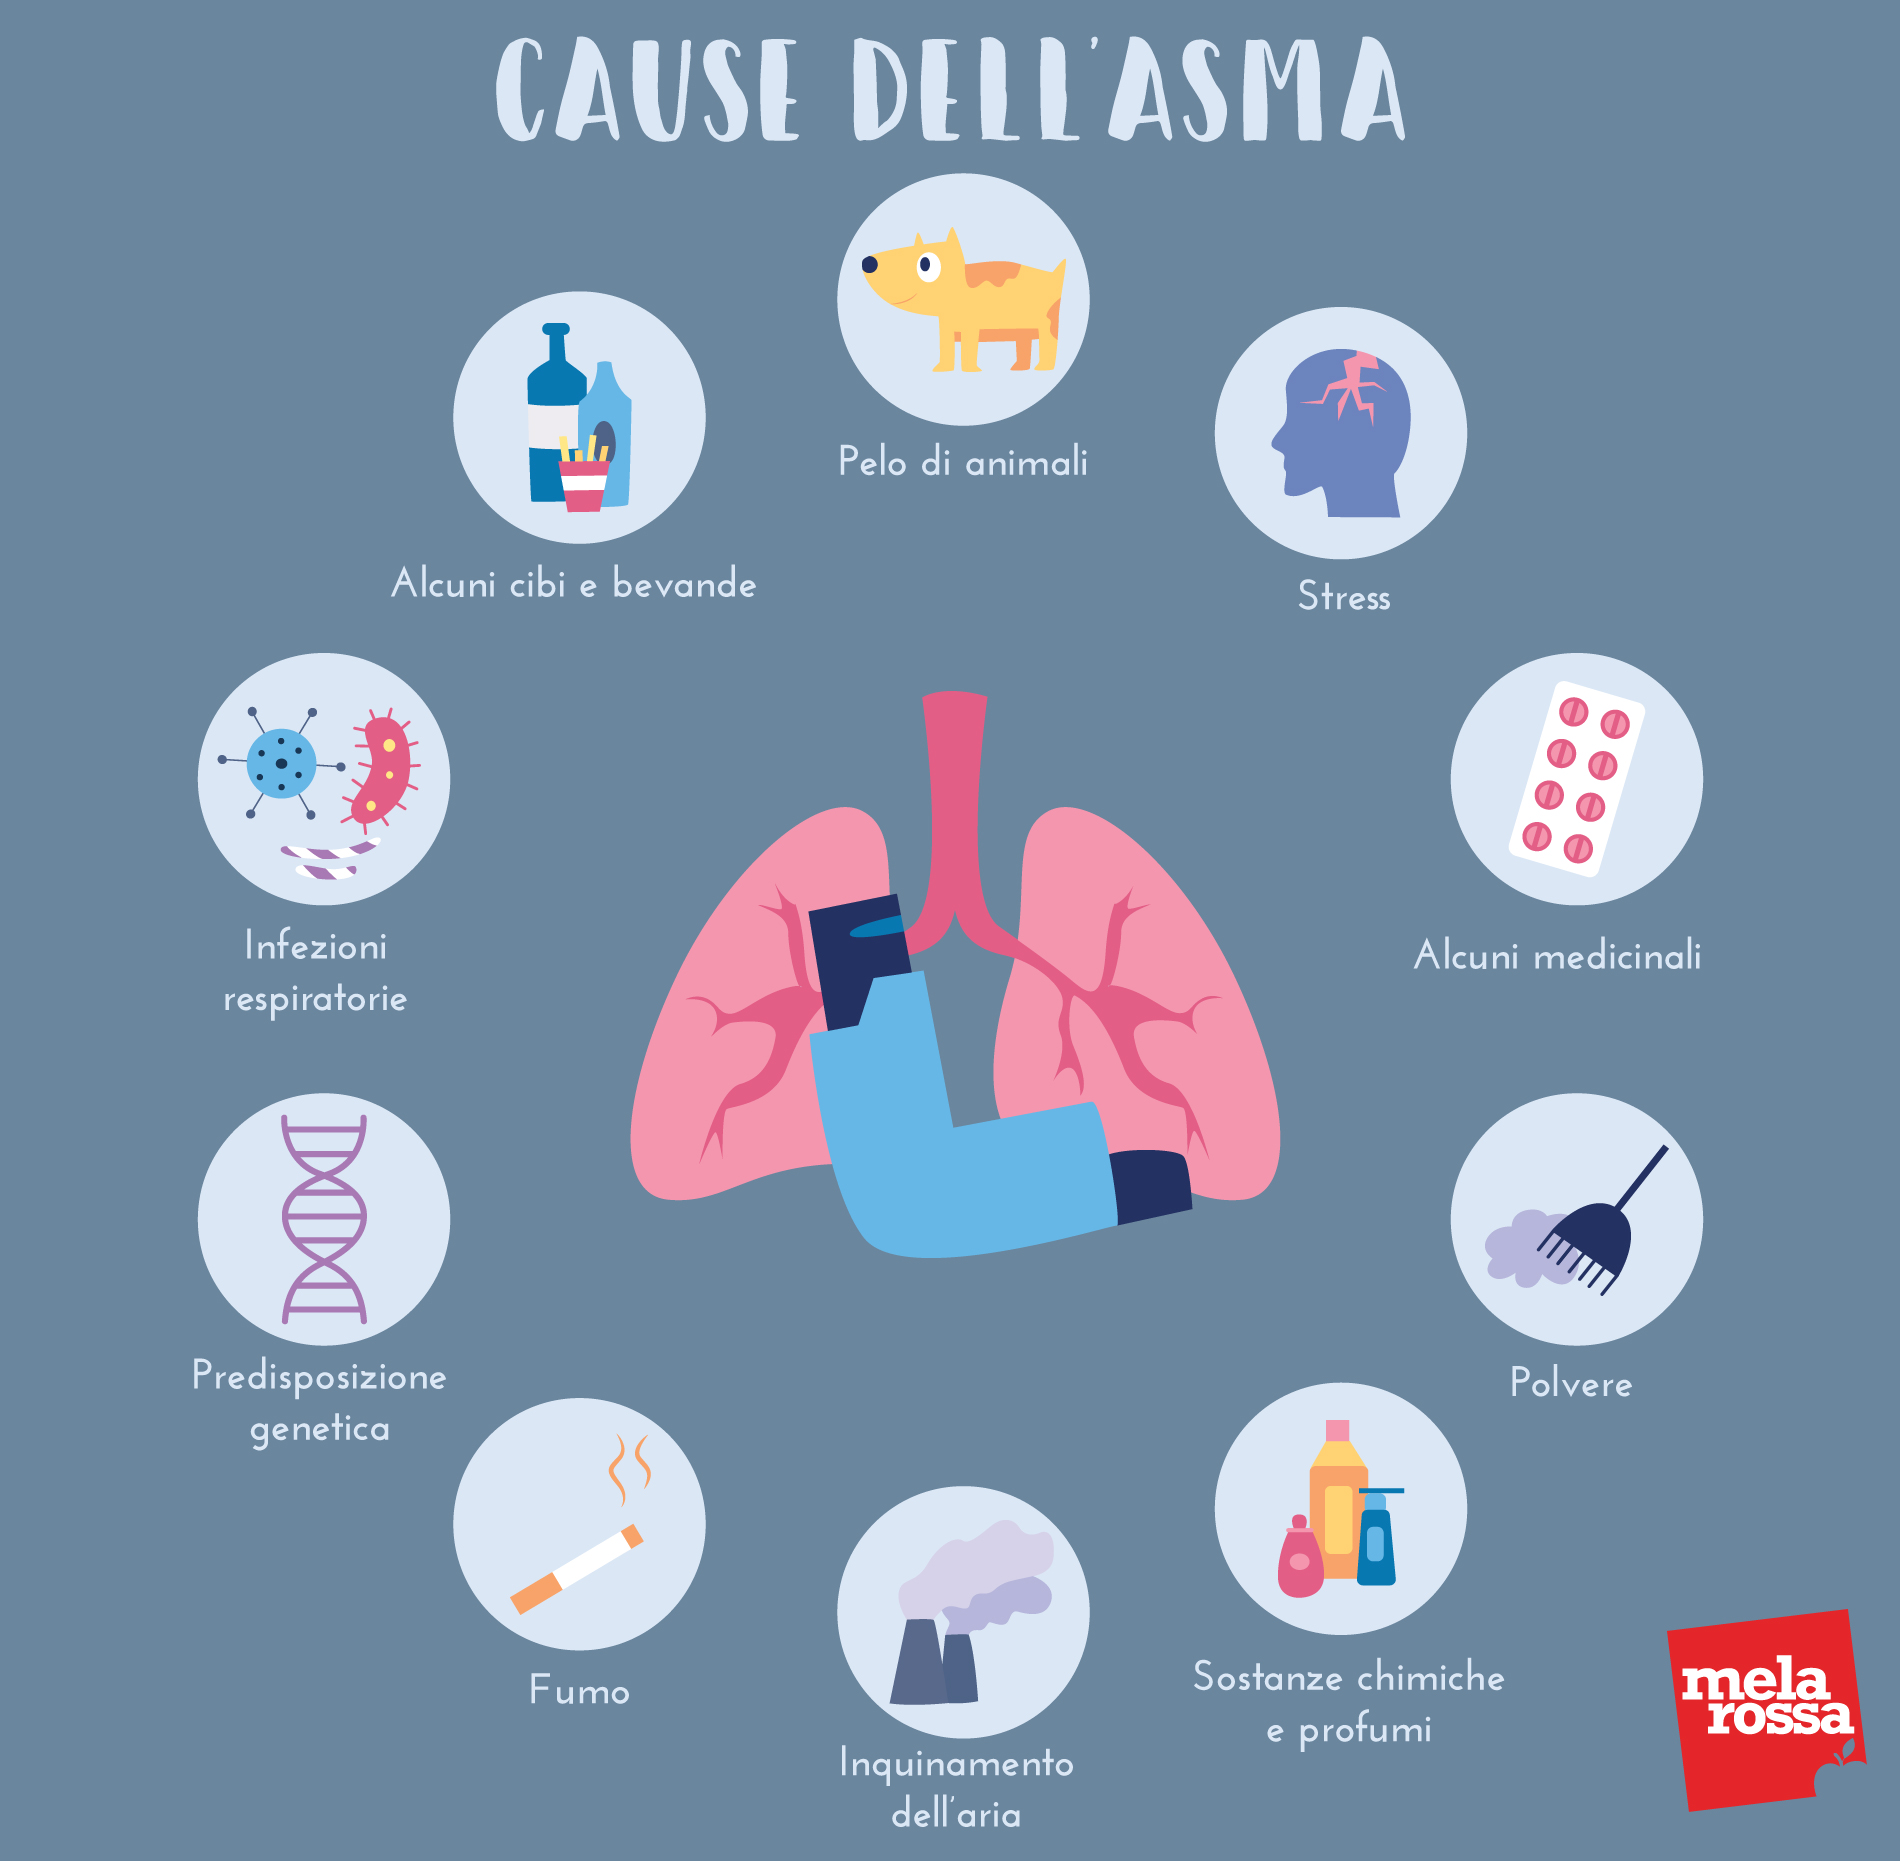 malattie respiratorie: cause dell'asma 